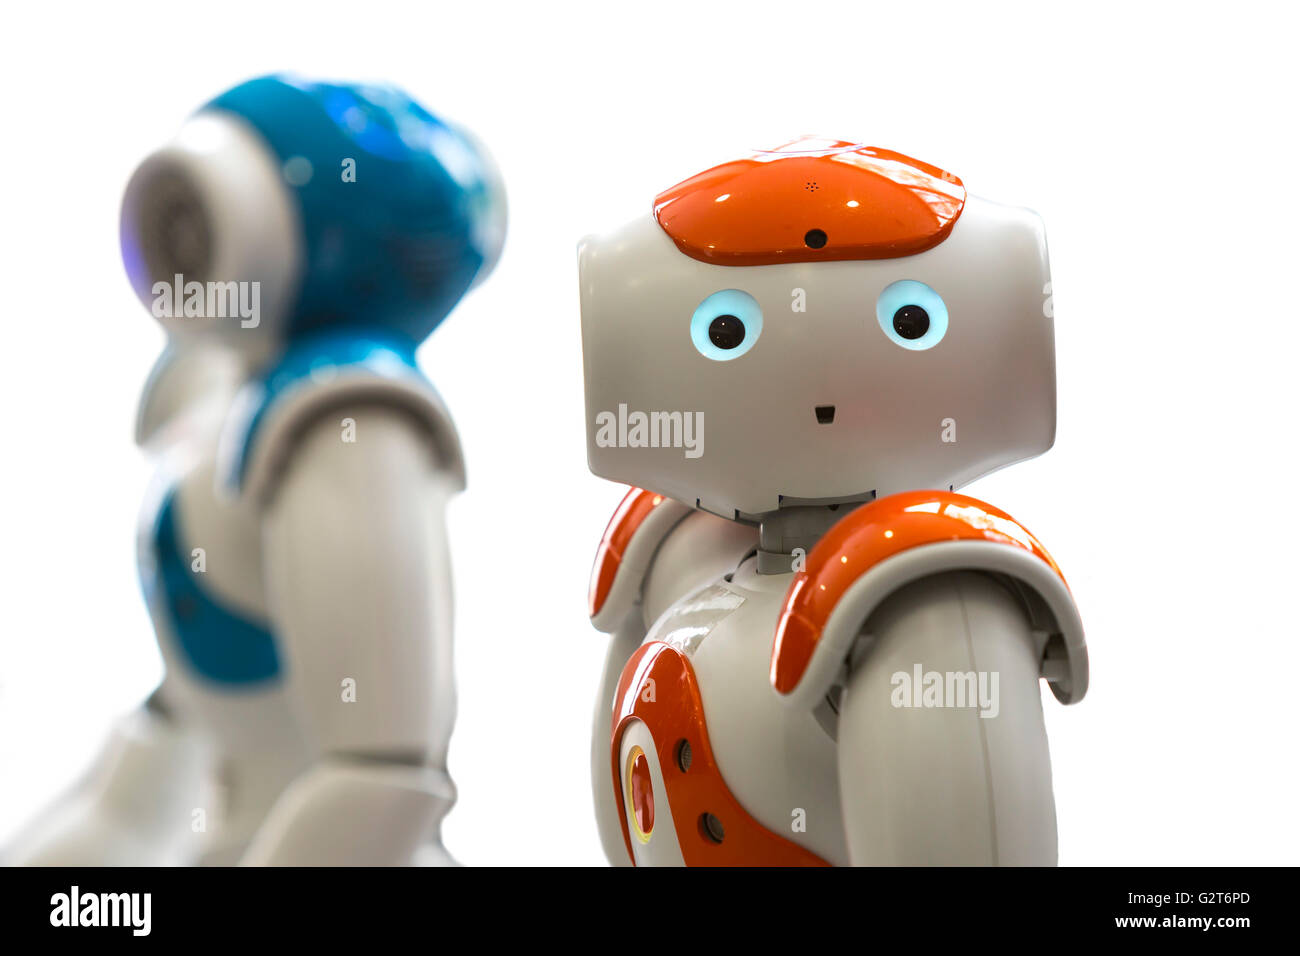 Kleine Roboter mit menschlichen Gesicht und Körper - humanoiden. Künstliche  Intelligenz - KI. Orange und blaue Roboter isoliert auf weißem Hinterg  Stockfotografie - Alamy